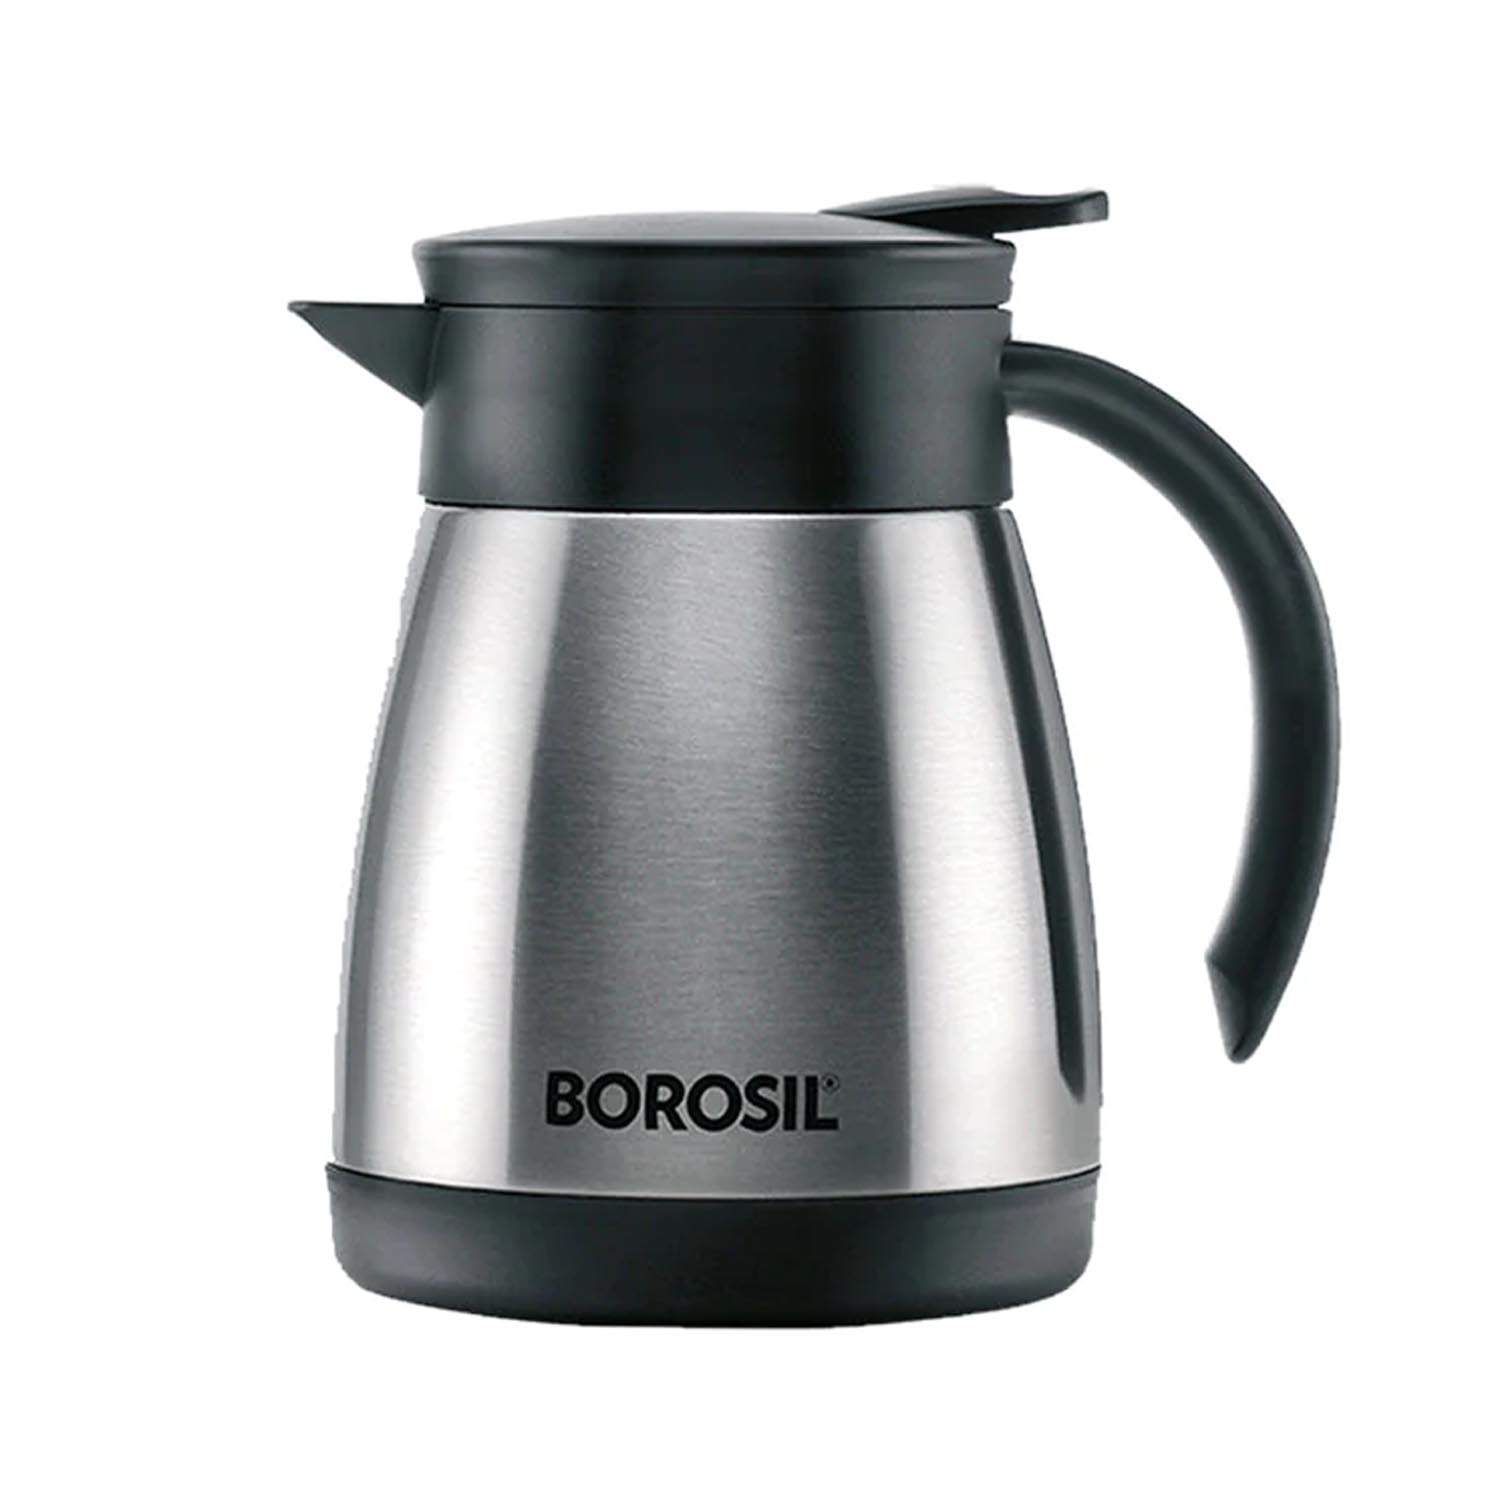 Borosil Vacuum Insulated Teapot Flask - Stainless Steel - 500 ML - FLKT50SSB11